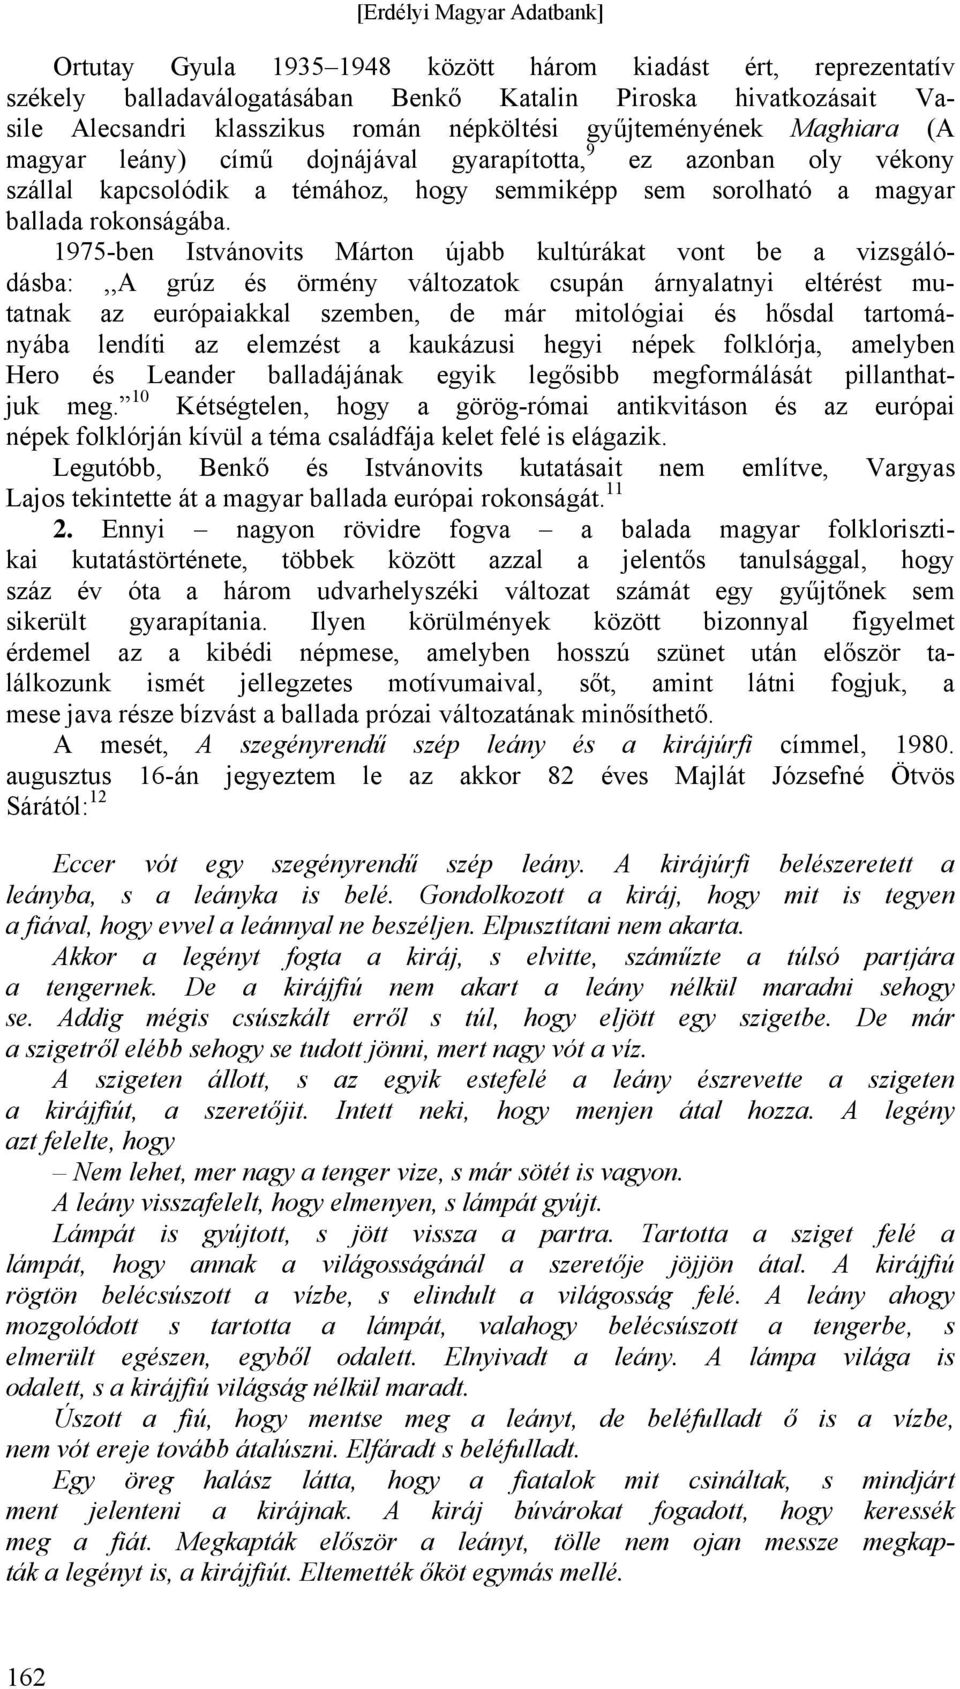 1975-ben Istvánovits Márton újabb kultúrákat vont be a vizsgálódásba:,,a grúz és örmény változatok csupán árnyalatnyi eltérést mutatnak az európaiakkal szemben, de már mitológiai és hősdal